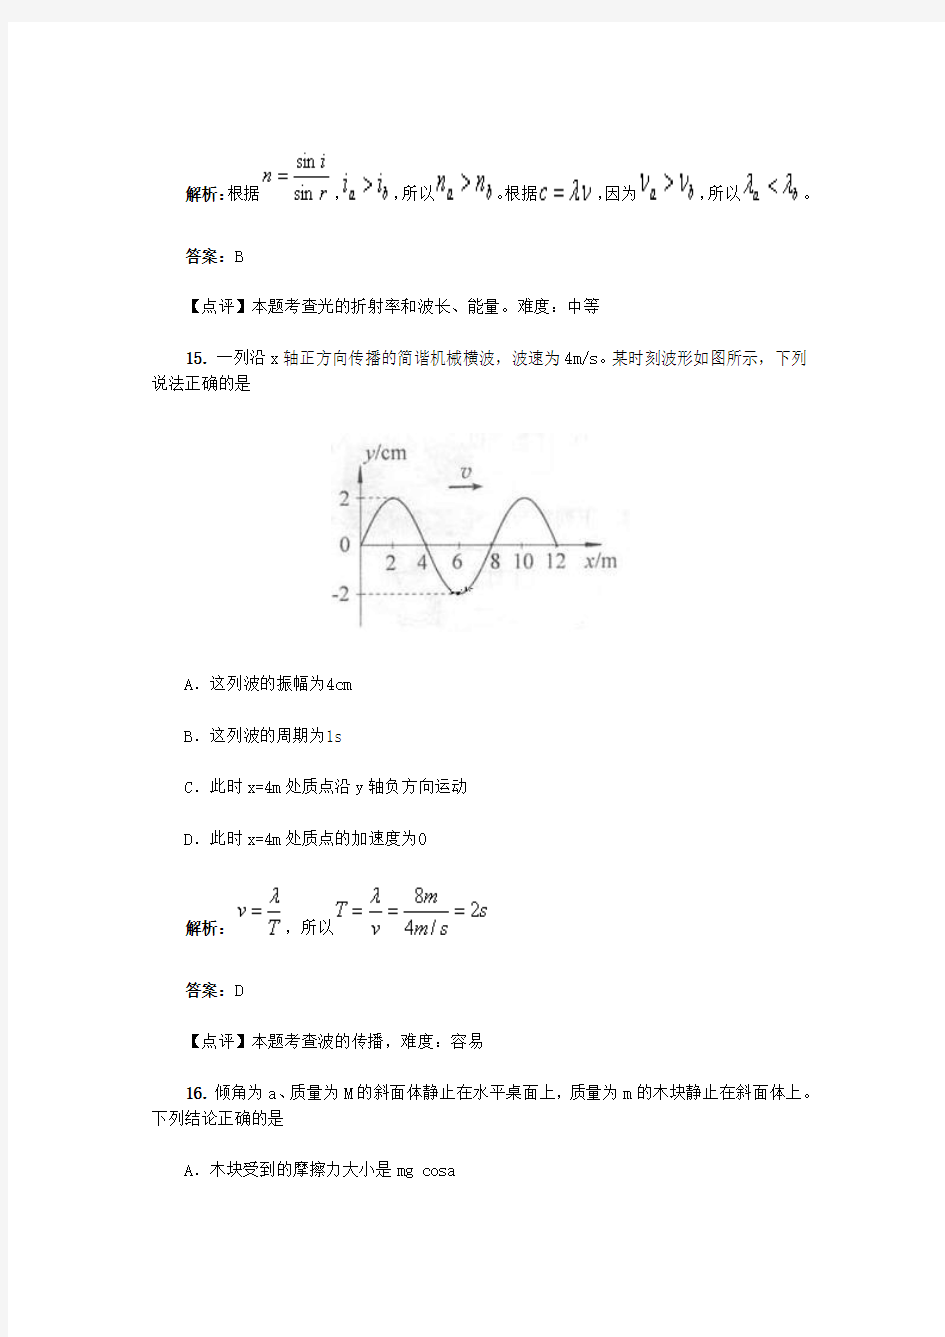 2013年高考北京卷物理试题解析